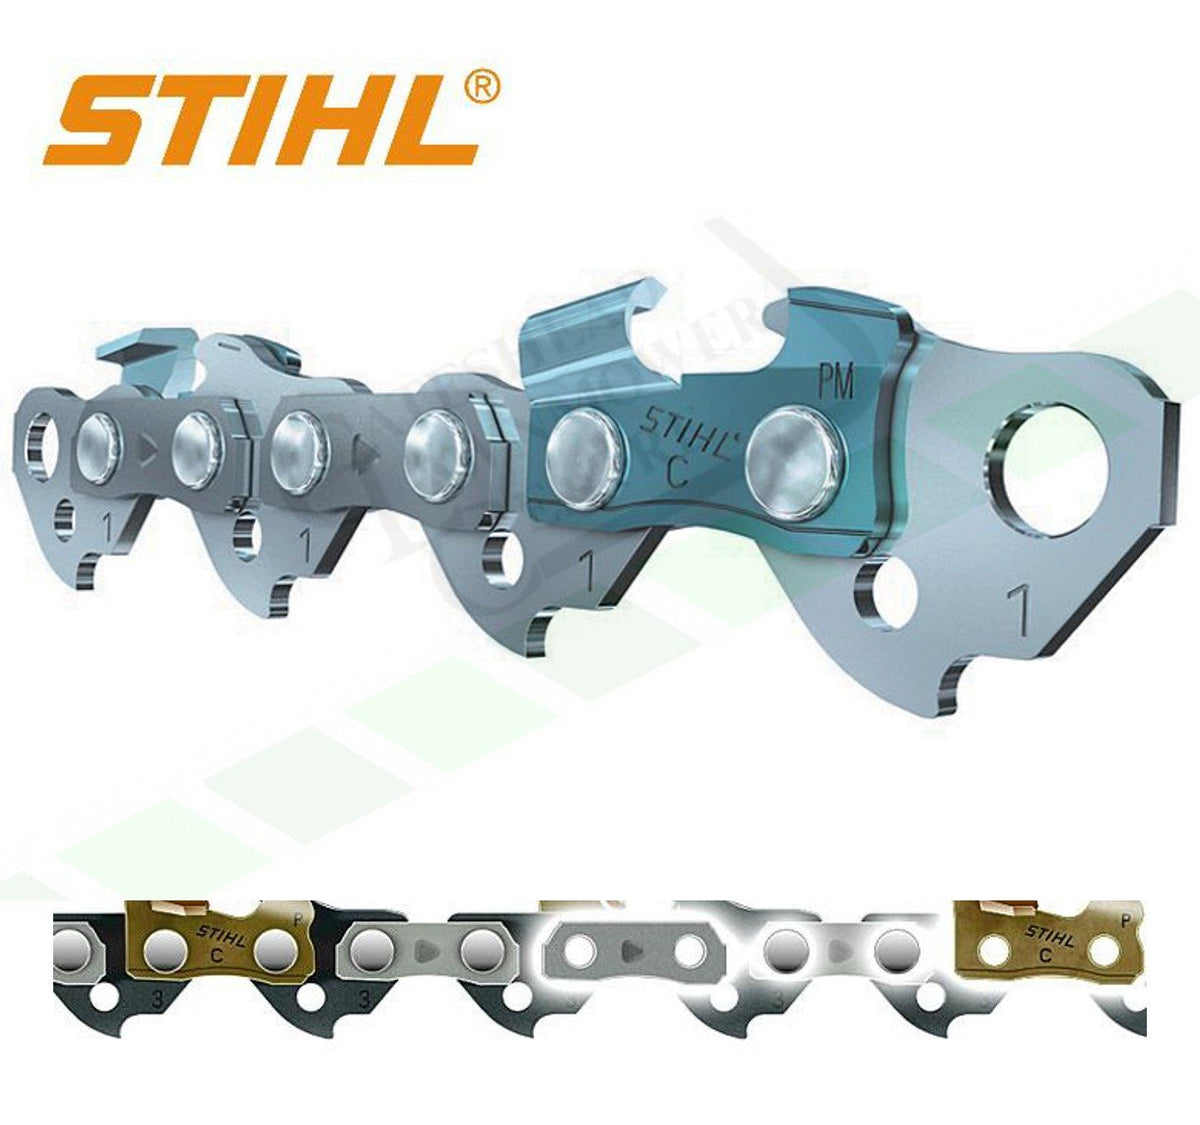 Stihl Rapid Super Chain reel 1.3mm/0.050" 3/8" - (3623 000 1640)